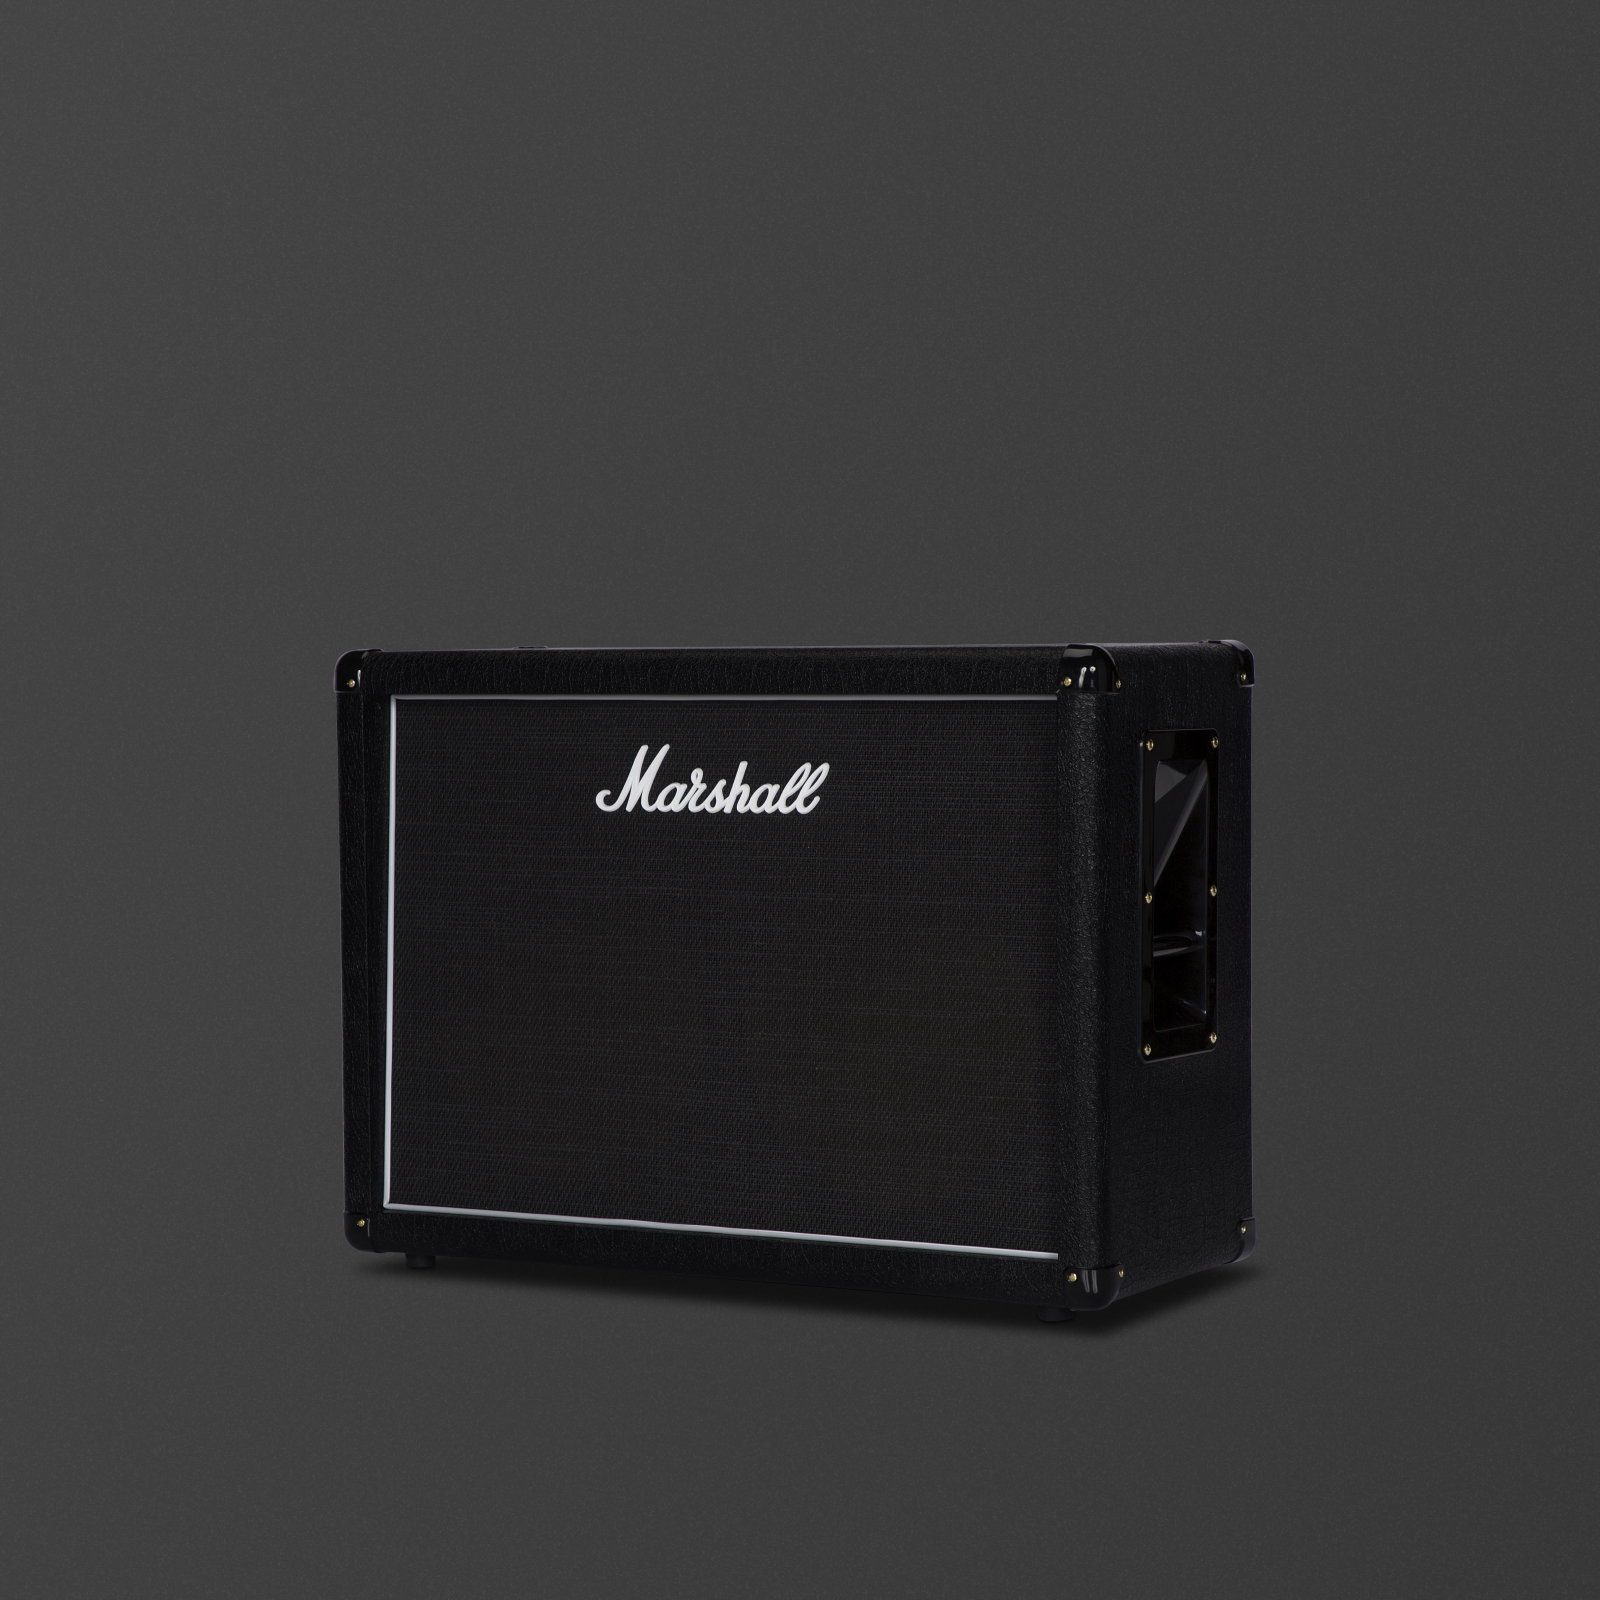 Das schwarze MX212-Gehäuse von Marshall.  